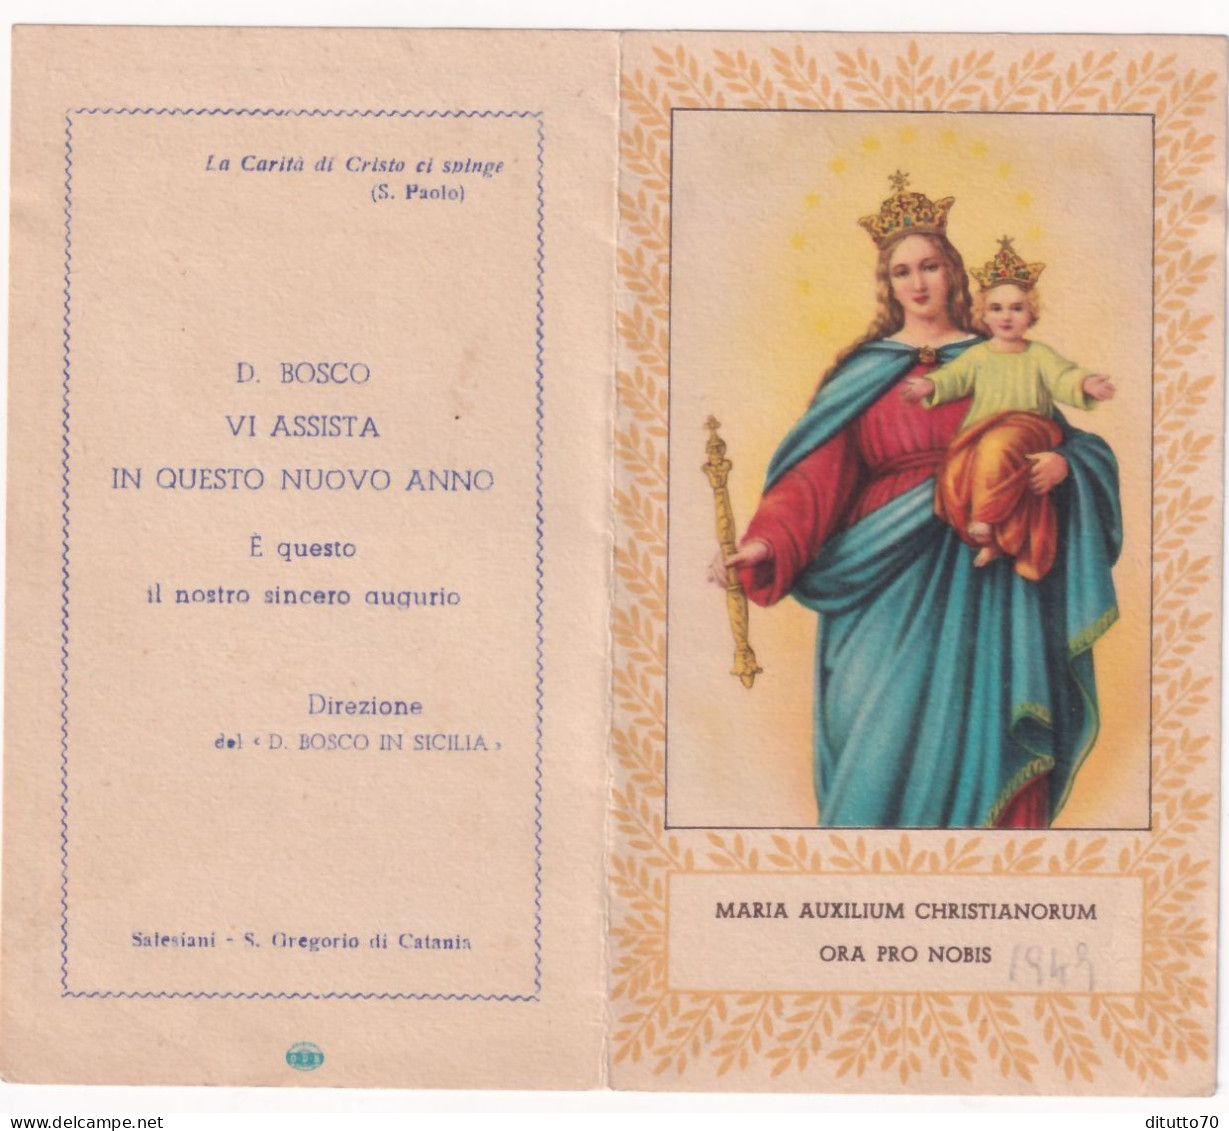 Calendarietto - Salesiano - Direzione Del D.bosco In Sicilia - Anno 1949 - Formato Piccolo : 1941-60